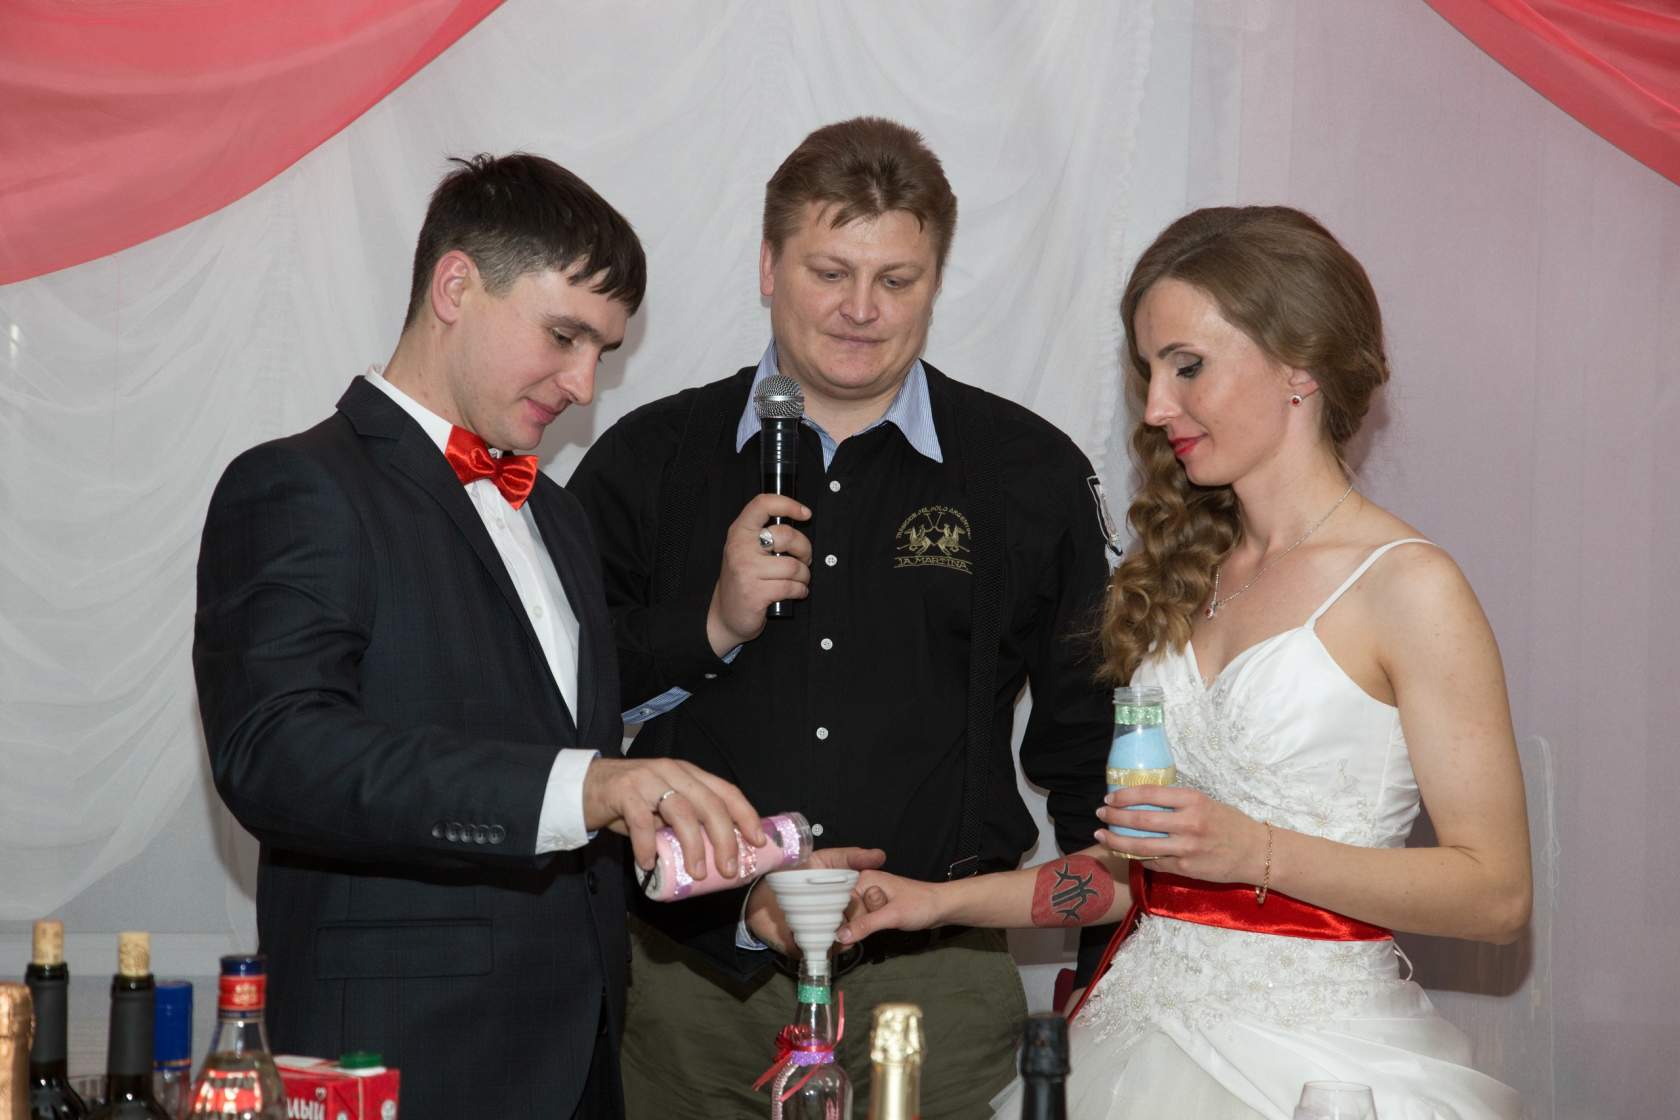 СУПЕРЦЕНА - Тамада на свадьбу, ведущий на юбилей, корпоратив - Тавда - фотография